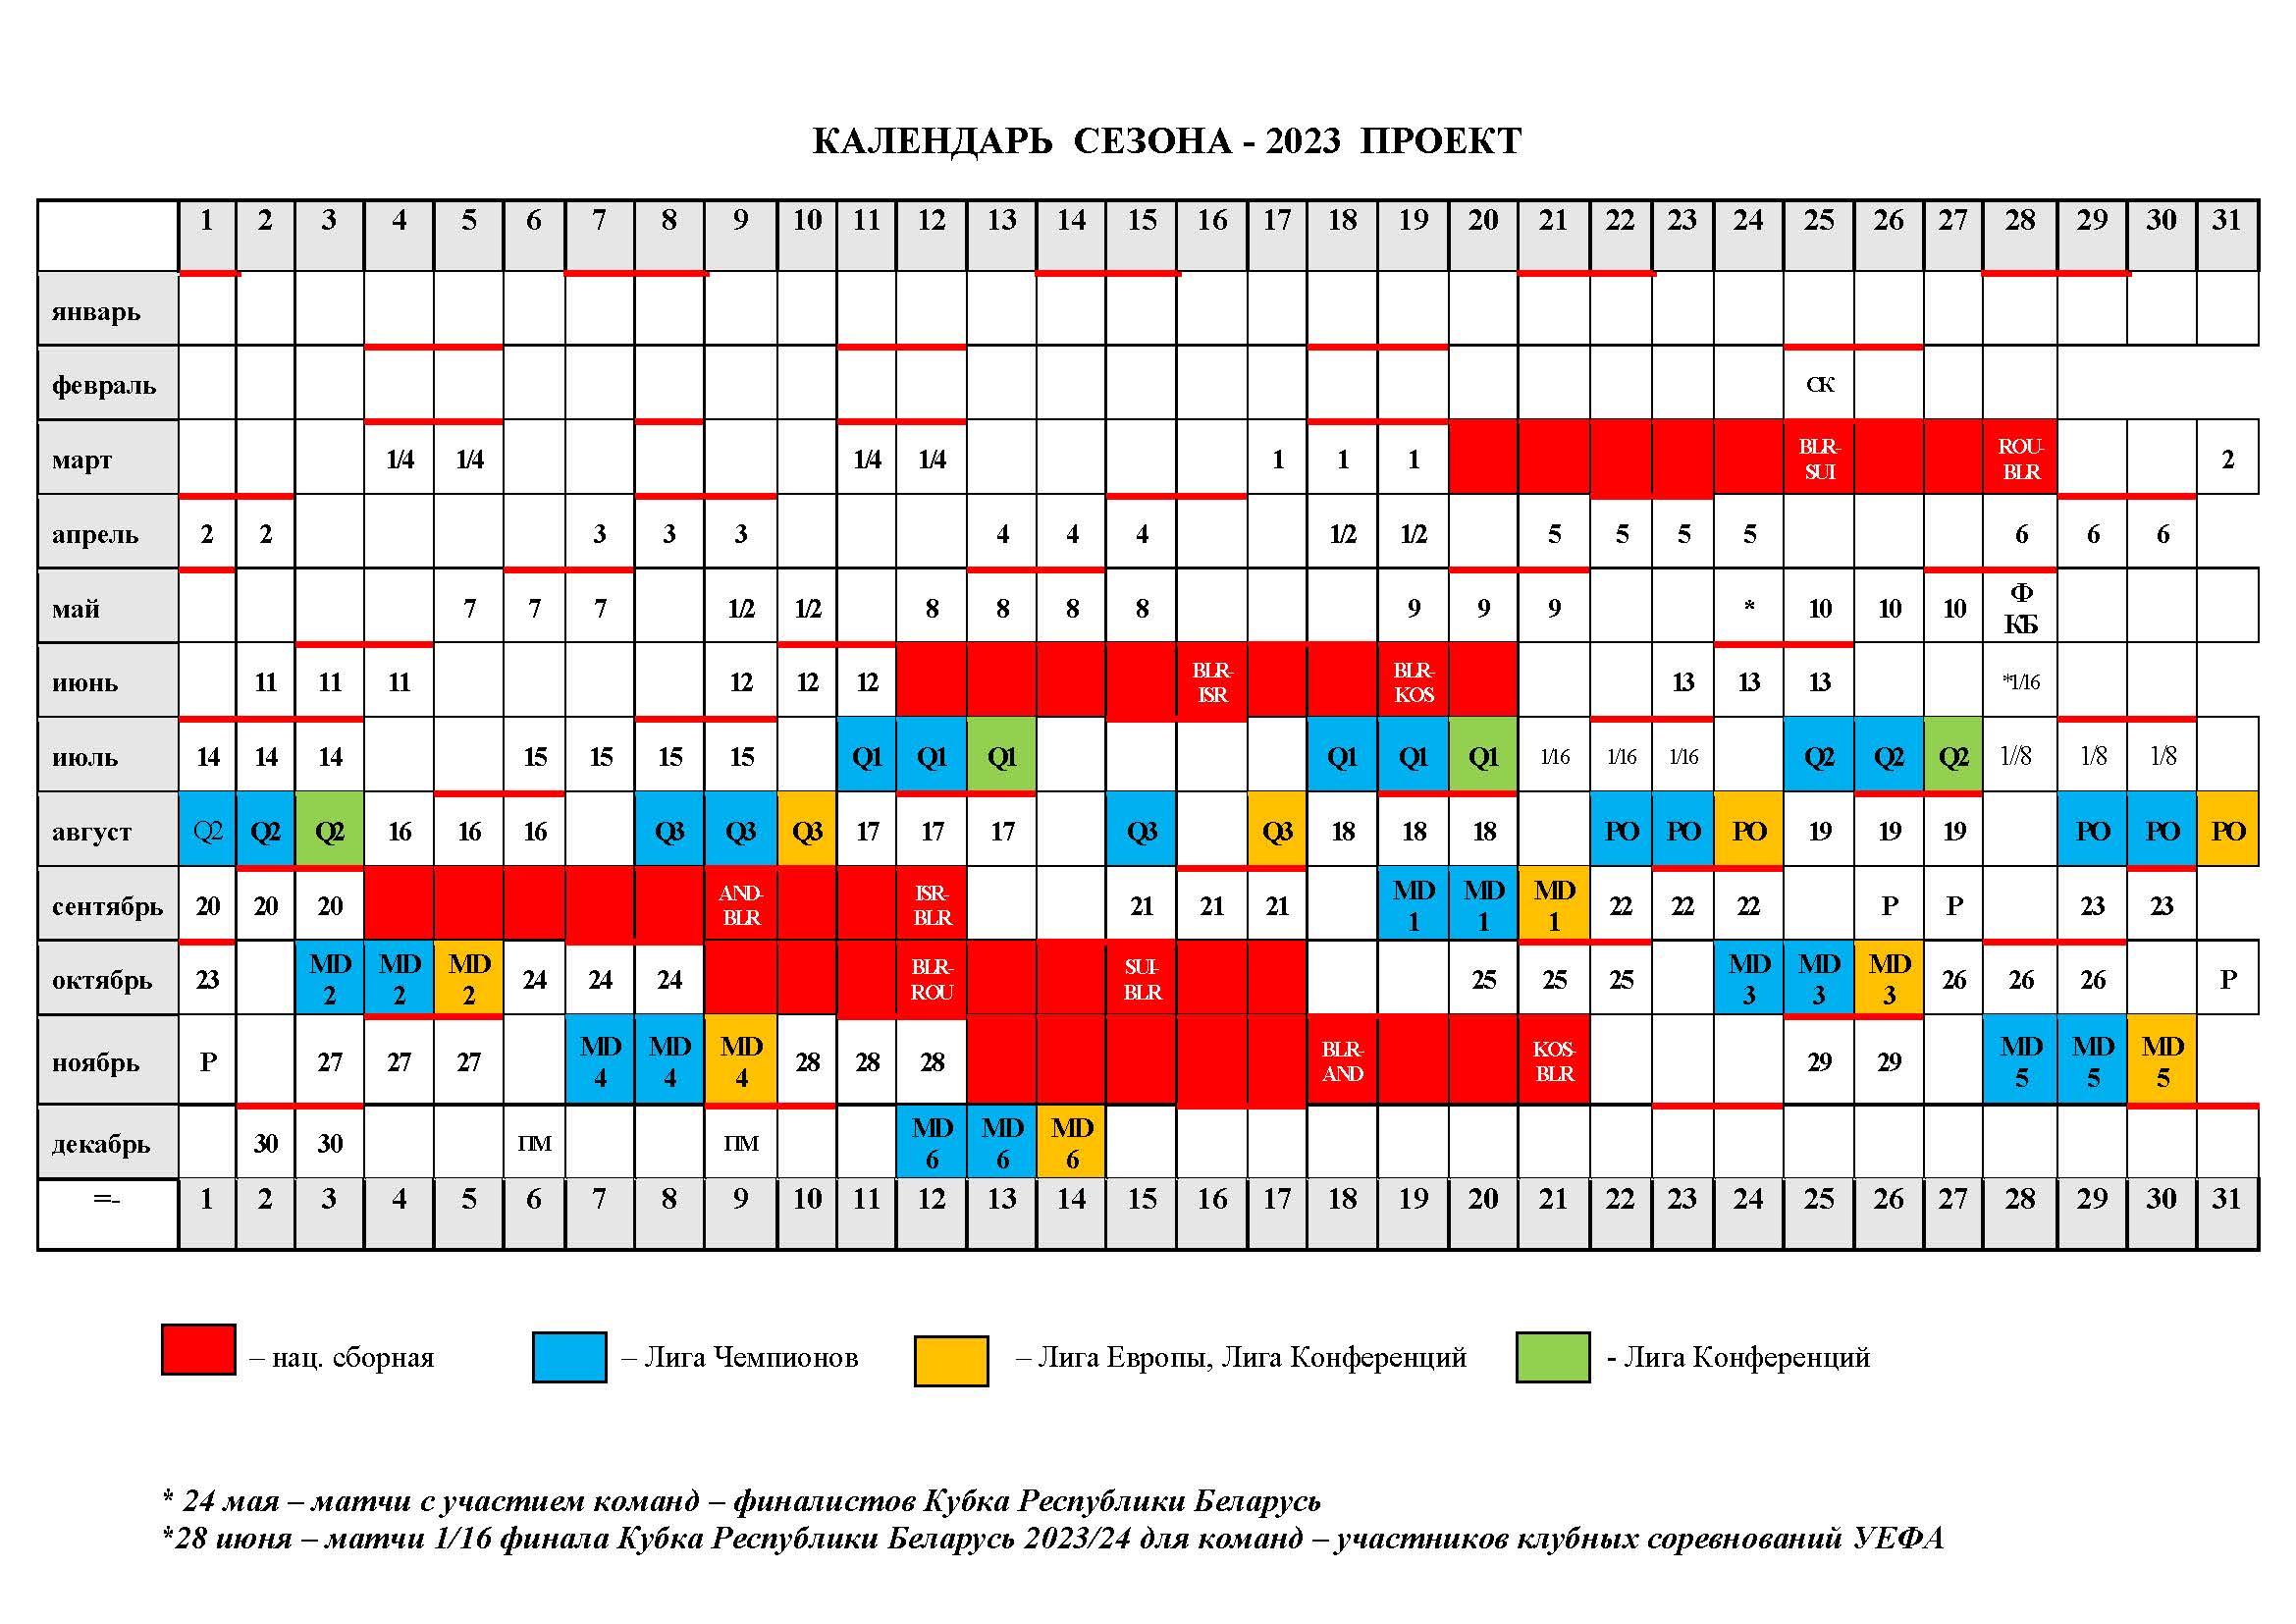 Чемпионат беларуси по футболу 2023 2024 высшая. Календарь проекта. Высшая лига 2023.